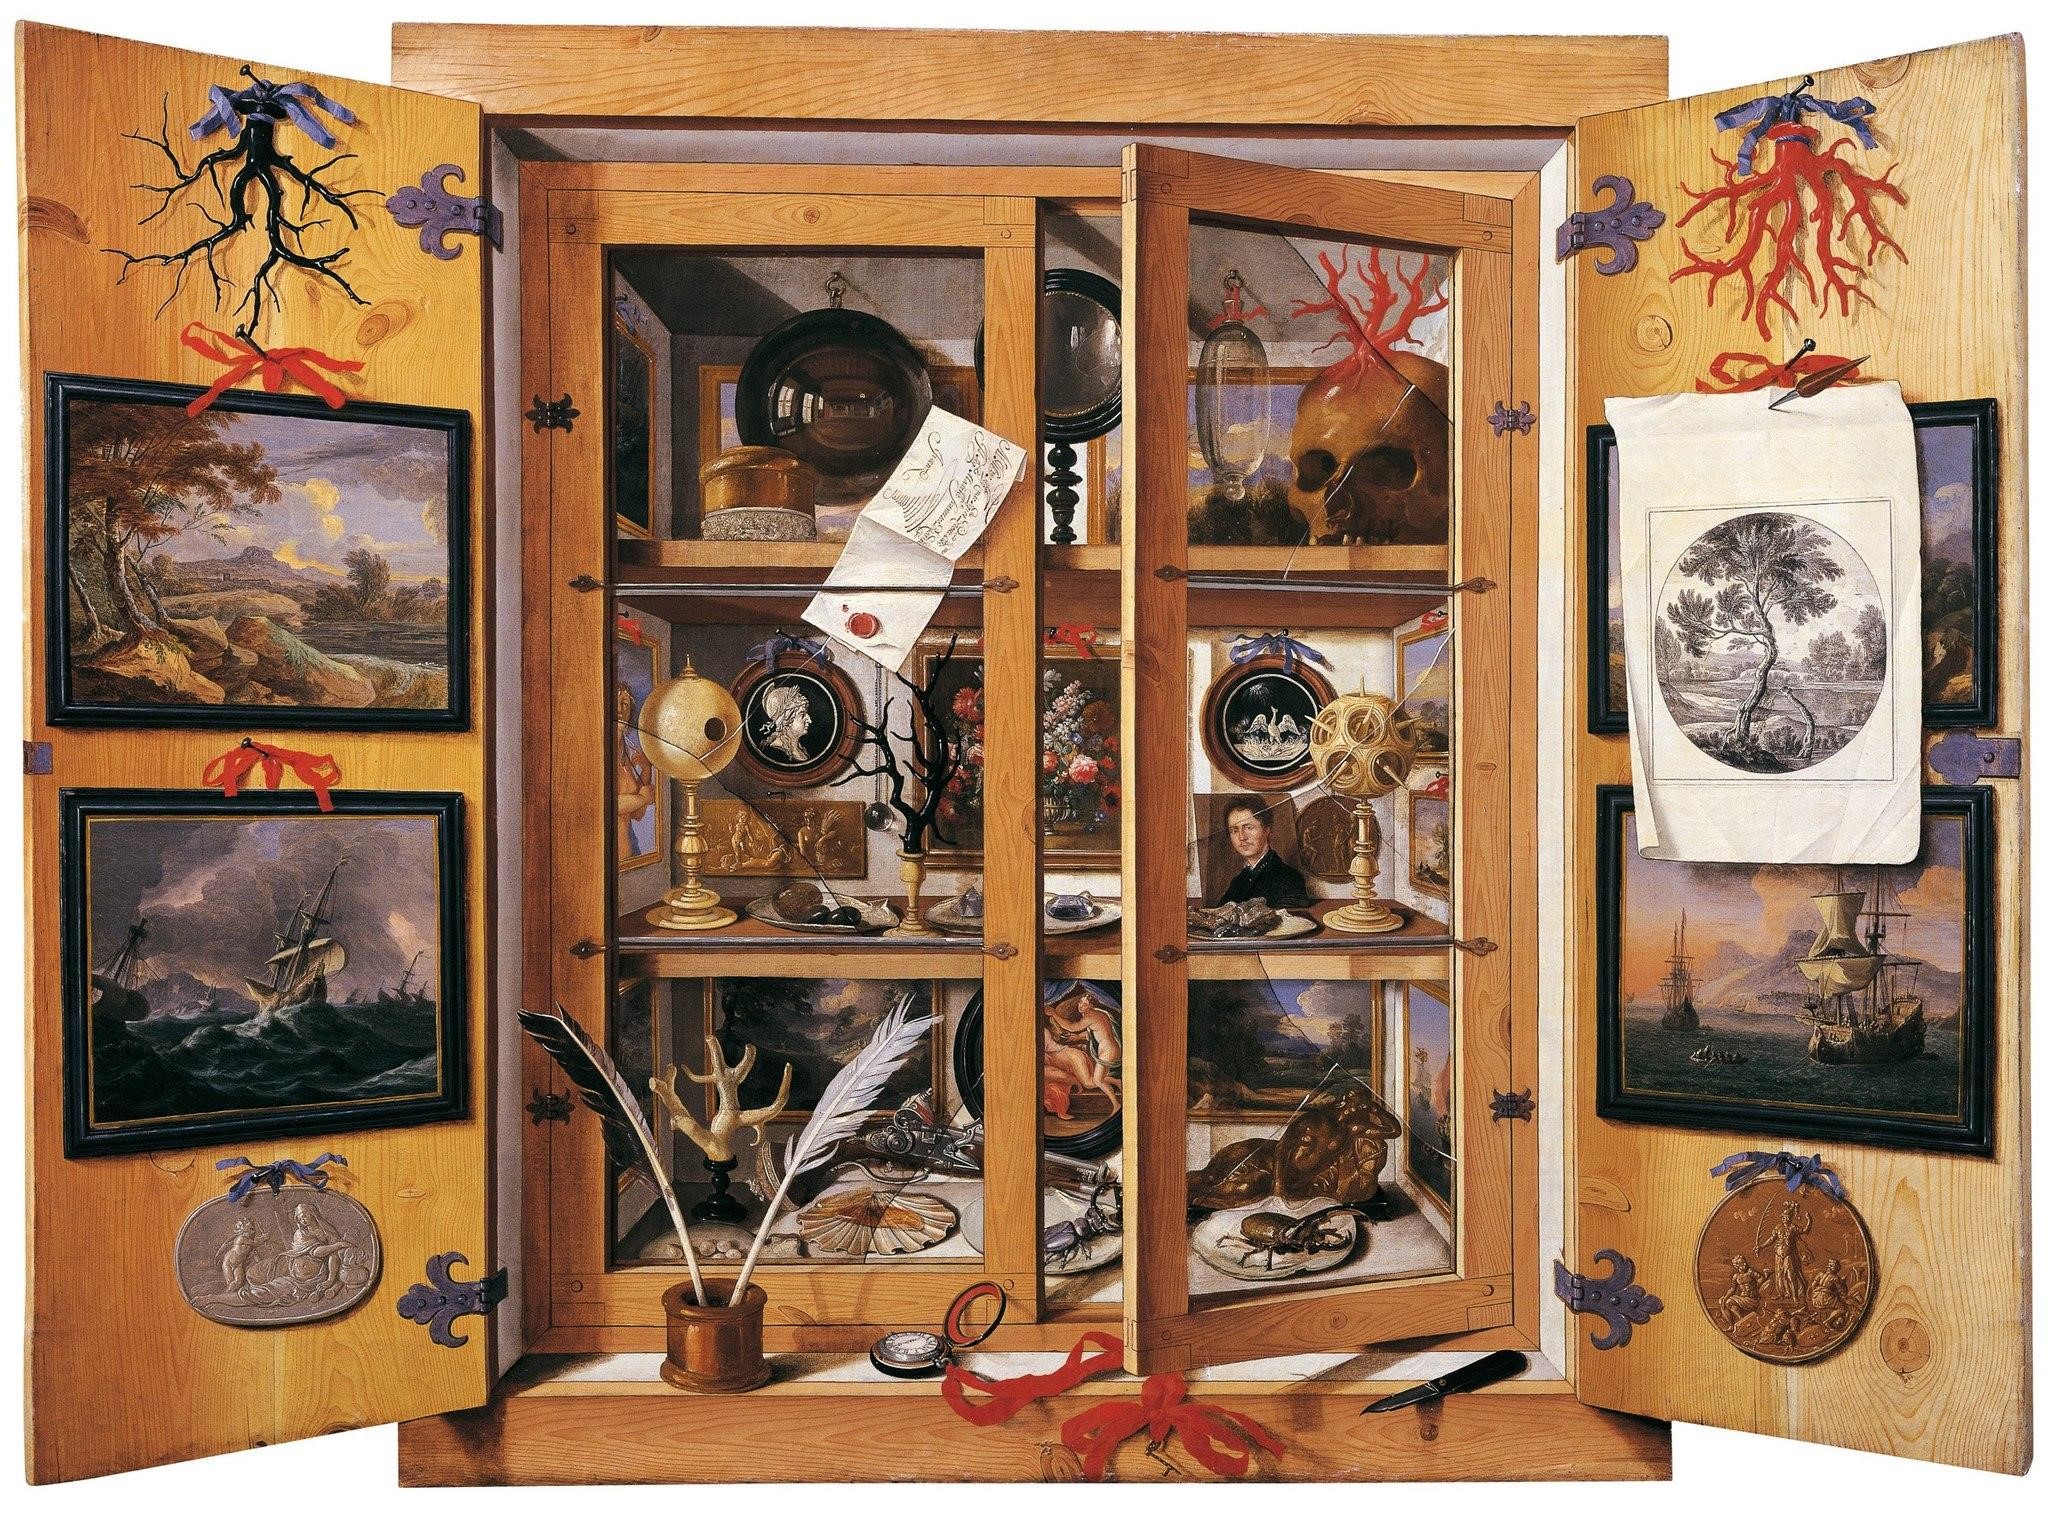 Domenico Remps “Különlegességek gyűjteménye” című olajfestménye az 1690-es évekből